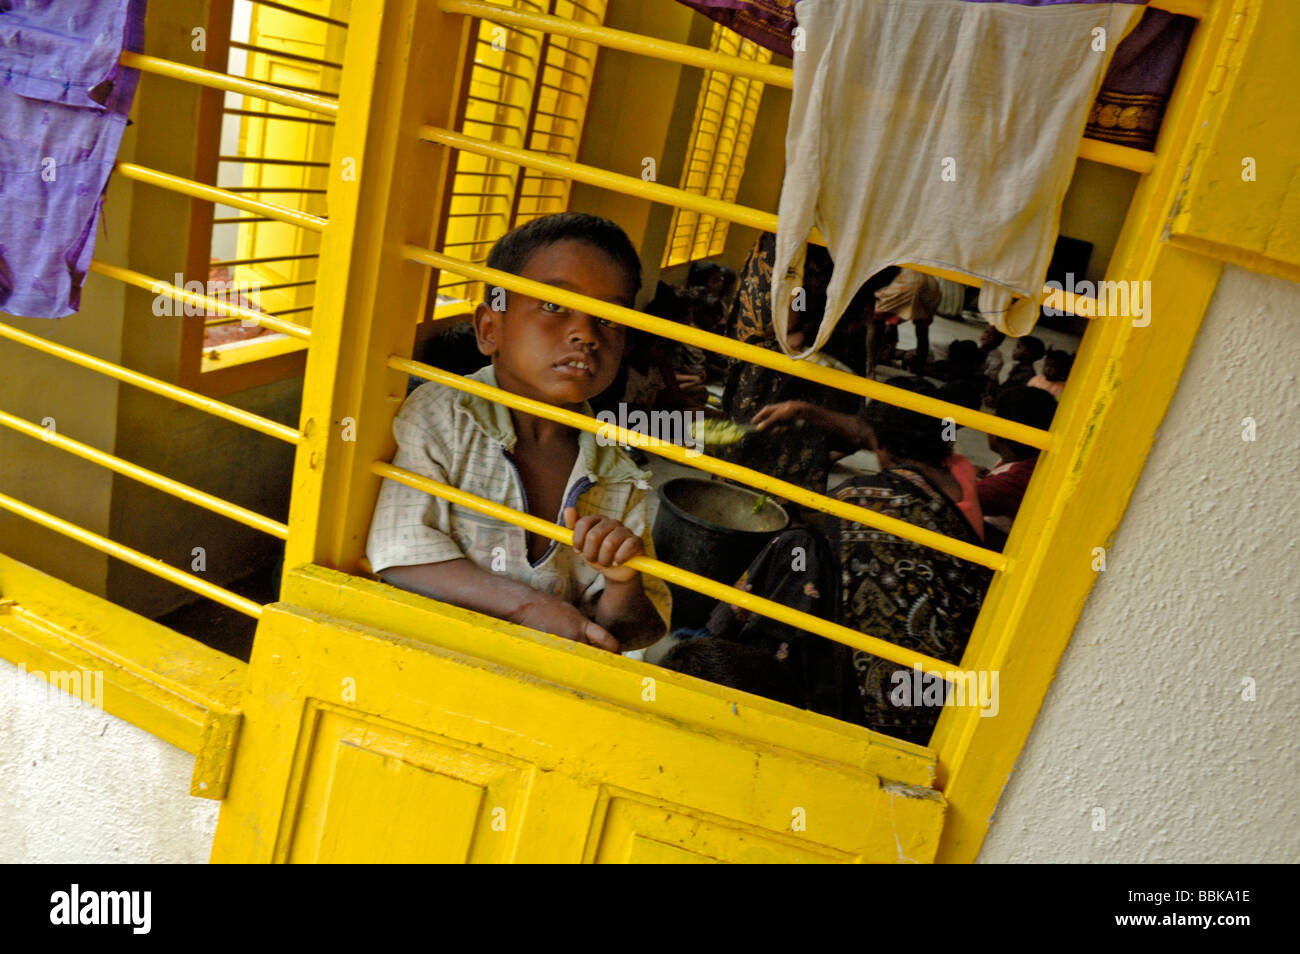 Kleines Kind in einem der Chennai ist vielen suburban Slums Kindergärten; Indien, Tamil Nadu, Chennai (Madras)... Stockfoto